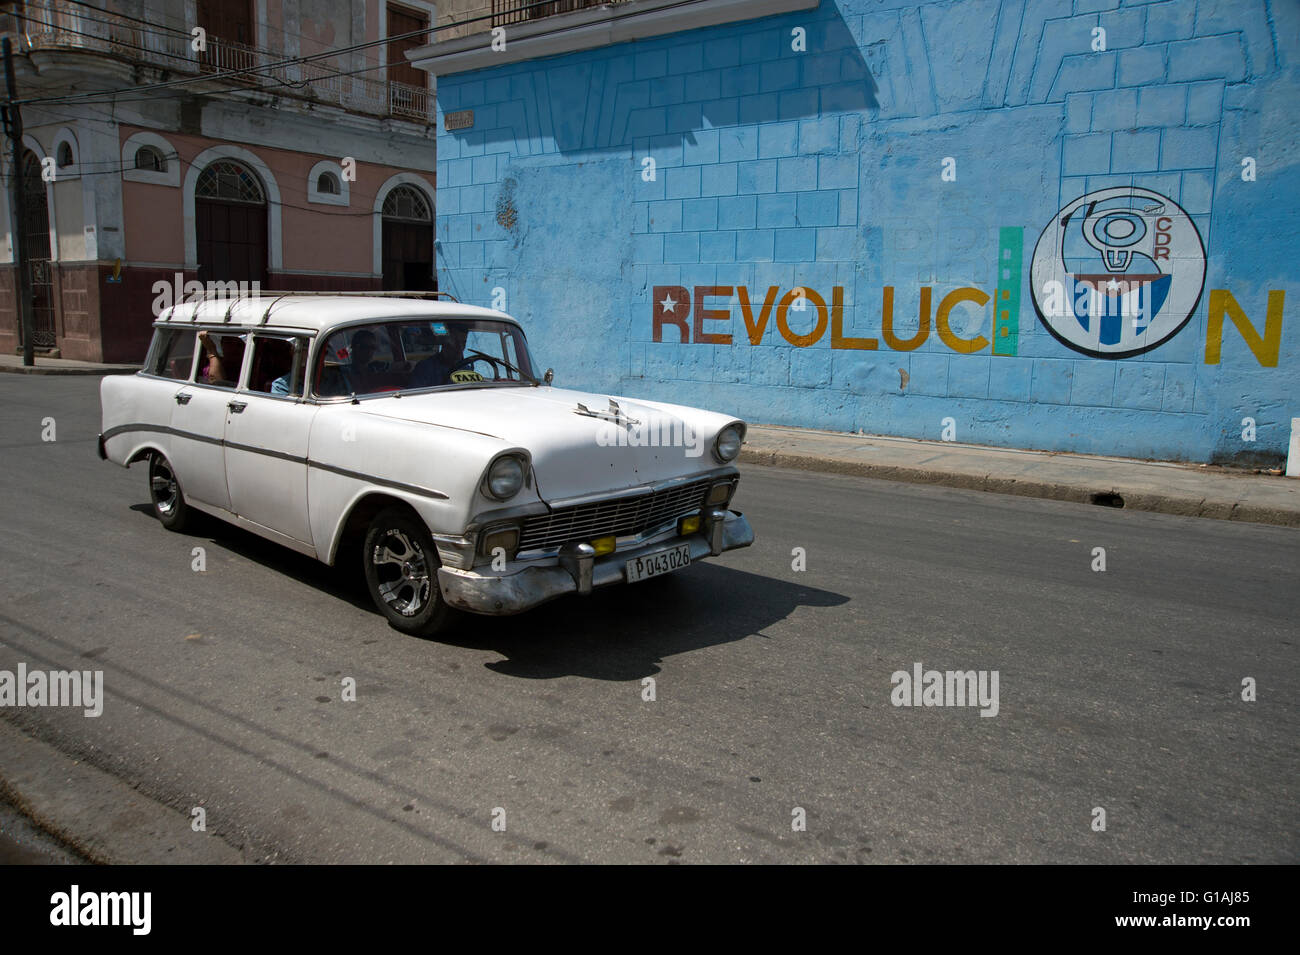 Un vecchio 1950's American classic car passa una rivoluzione pittura murale a Cienfuegos Cuba Foto Stock